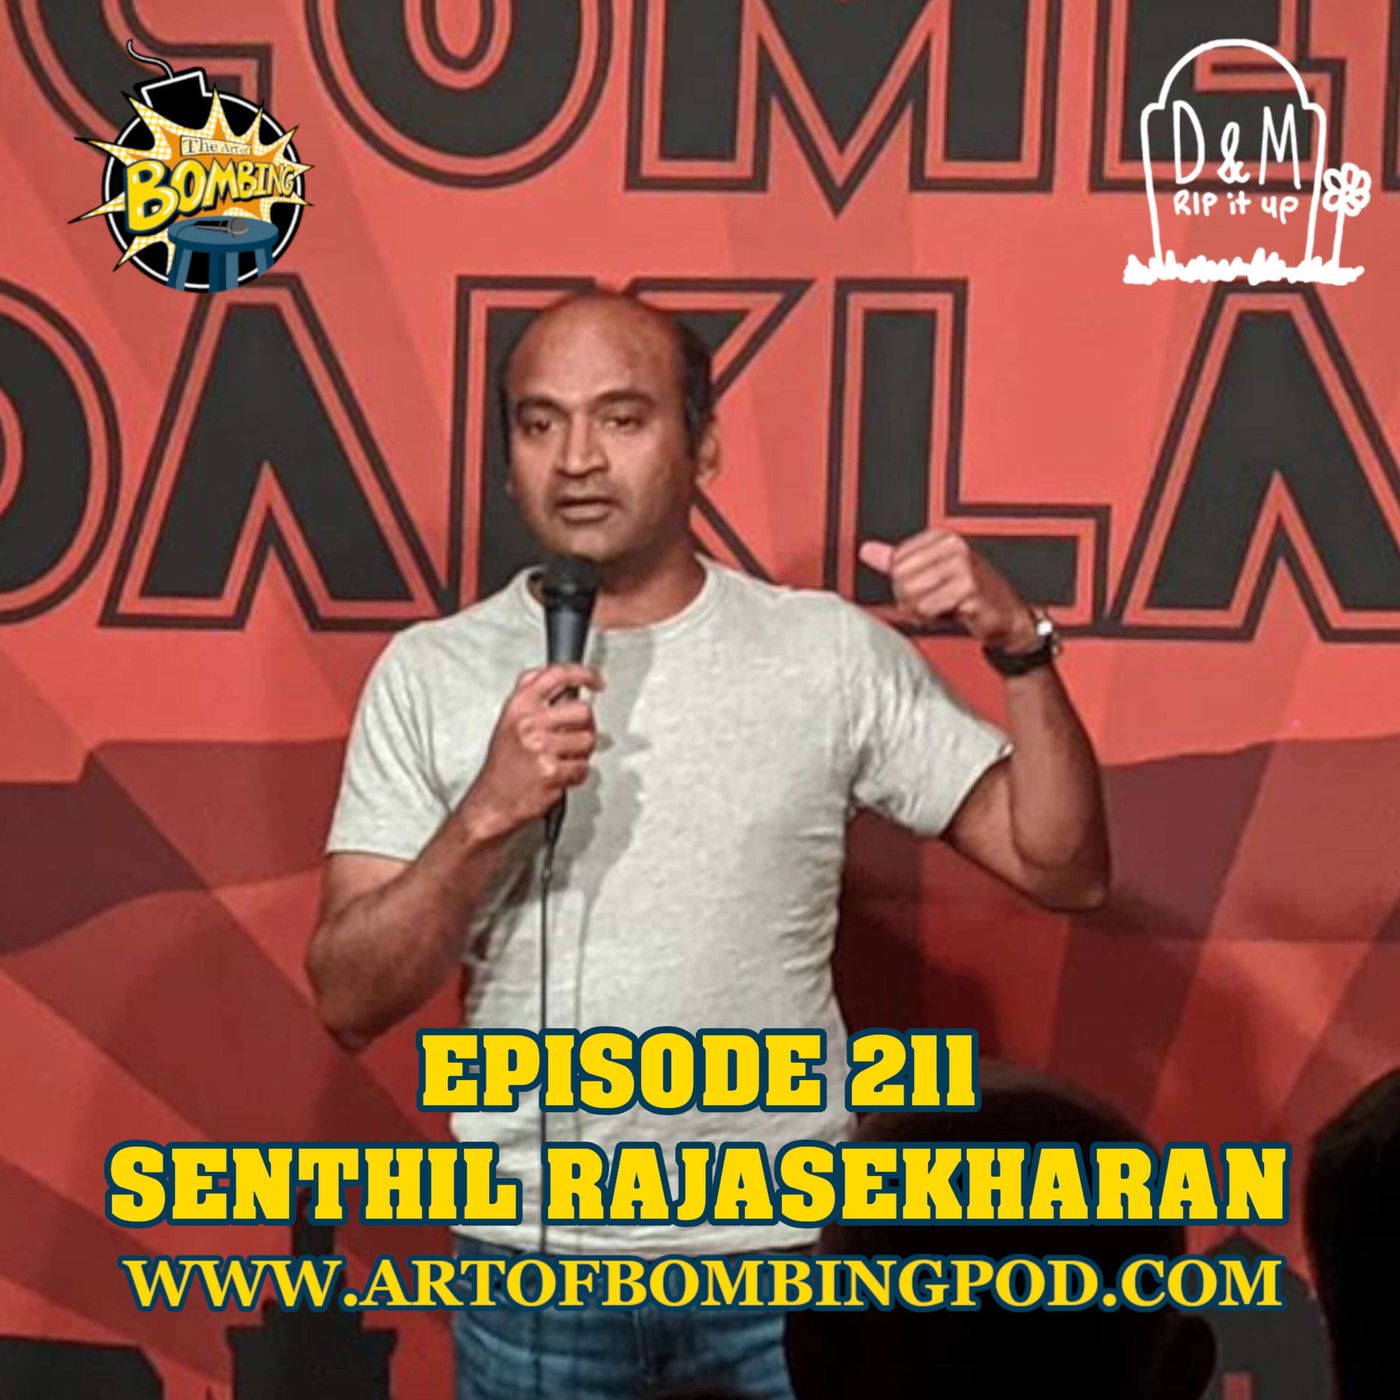 Episode 211: Senthil Rajasekharan (Fargo Comedy Festival, The Great Spirit Comedy Festival)